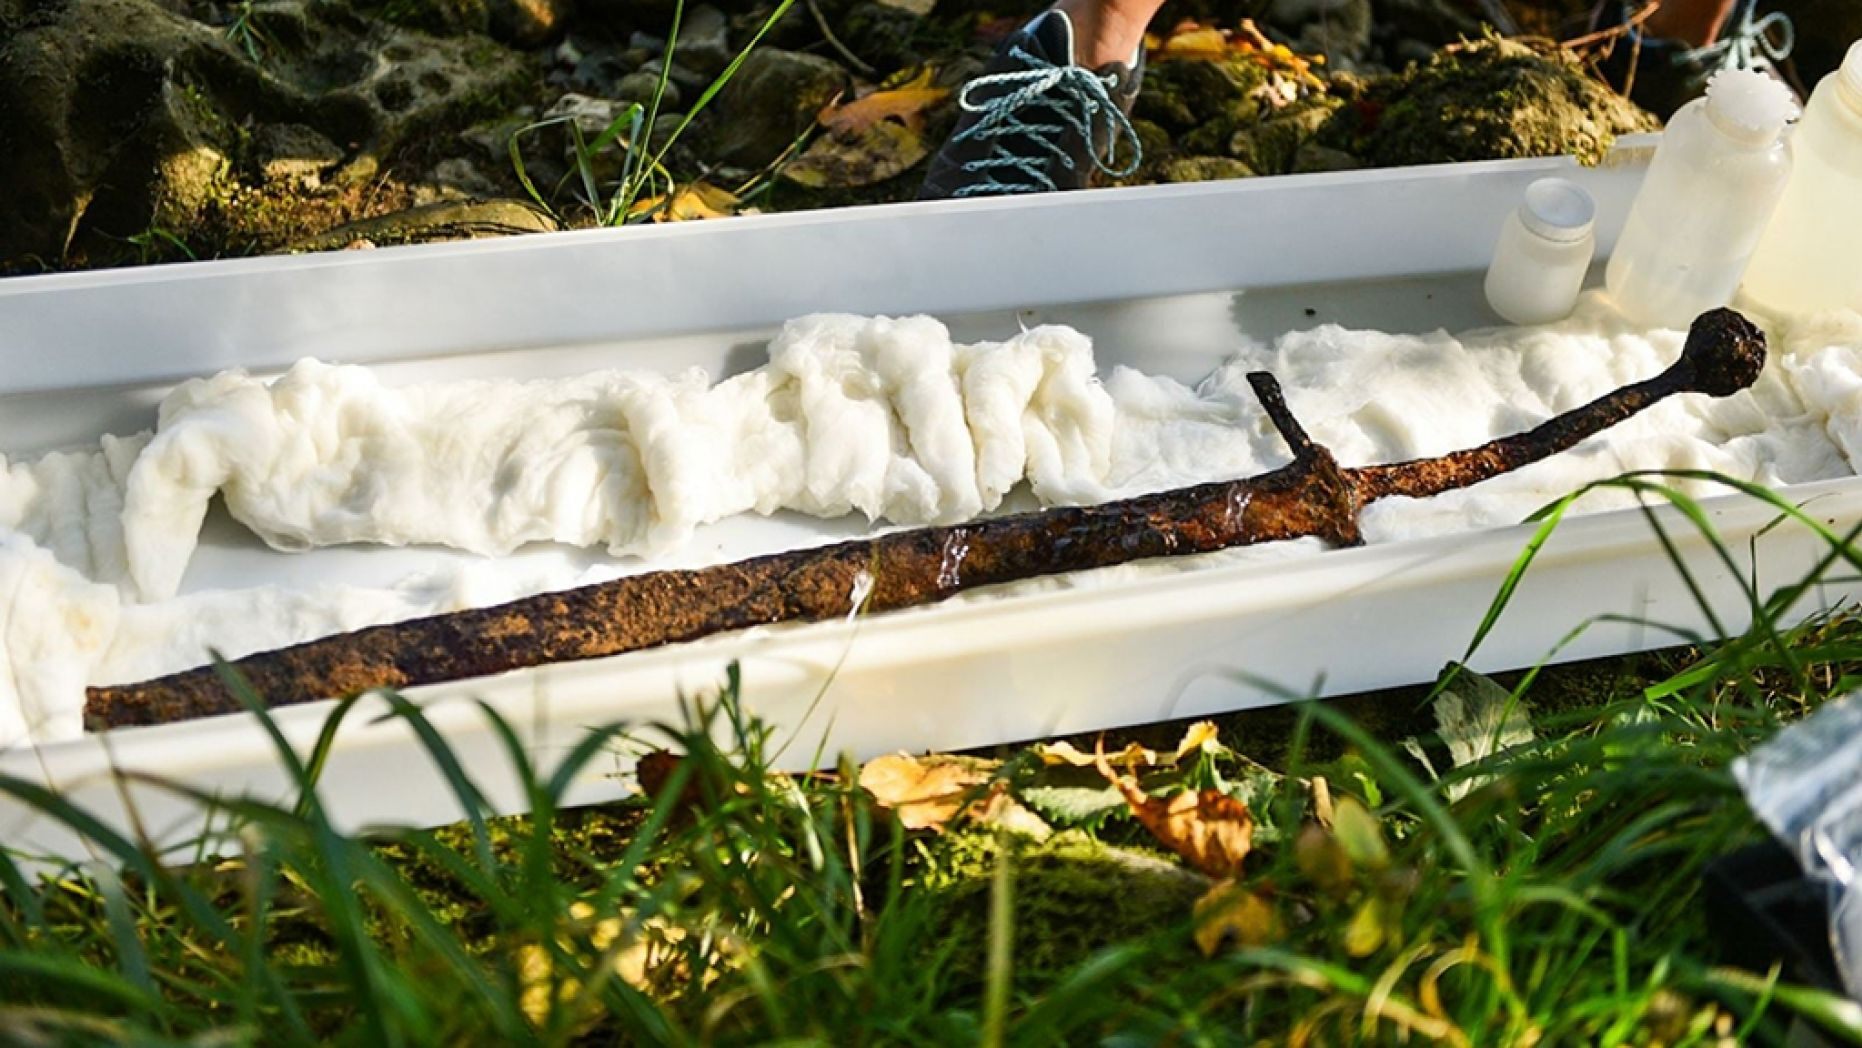 エクスカリバー出現、700年前の剣が川底の岩に刺さった状態で発見される